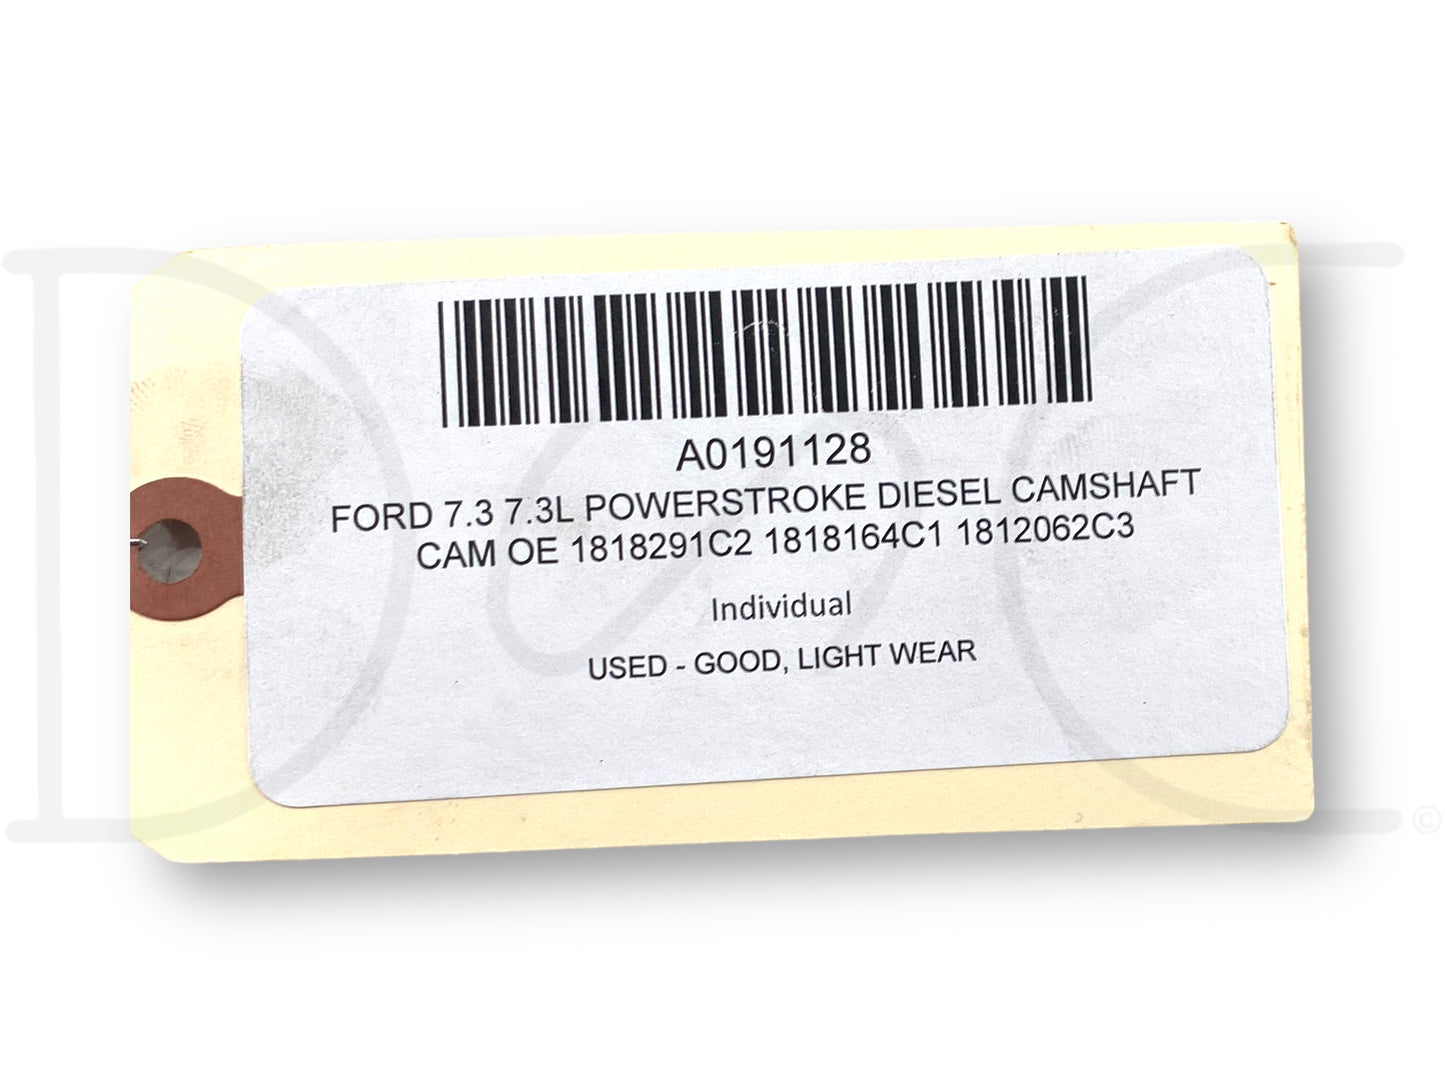 Ford 7.3 7.3L Powerstroke Diesel Camshaft Cam OE 1818291C2 1818164C1 1812062C3